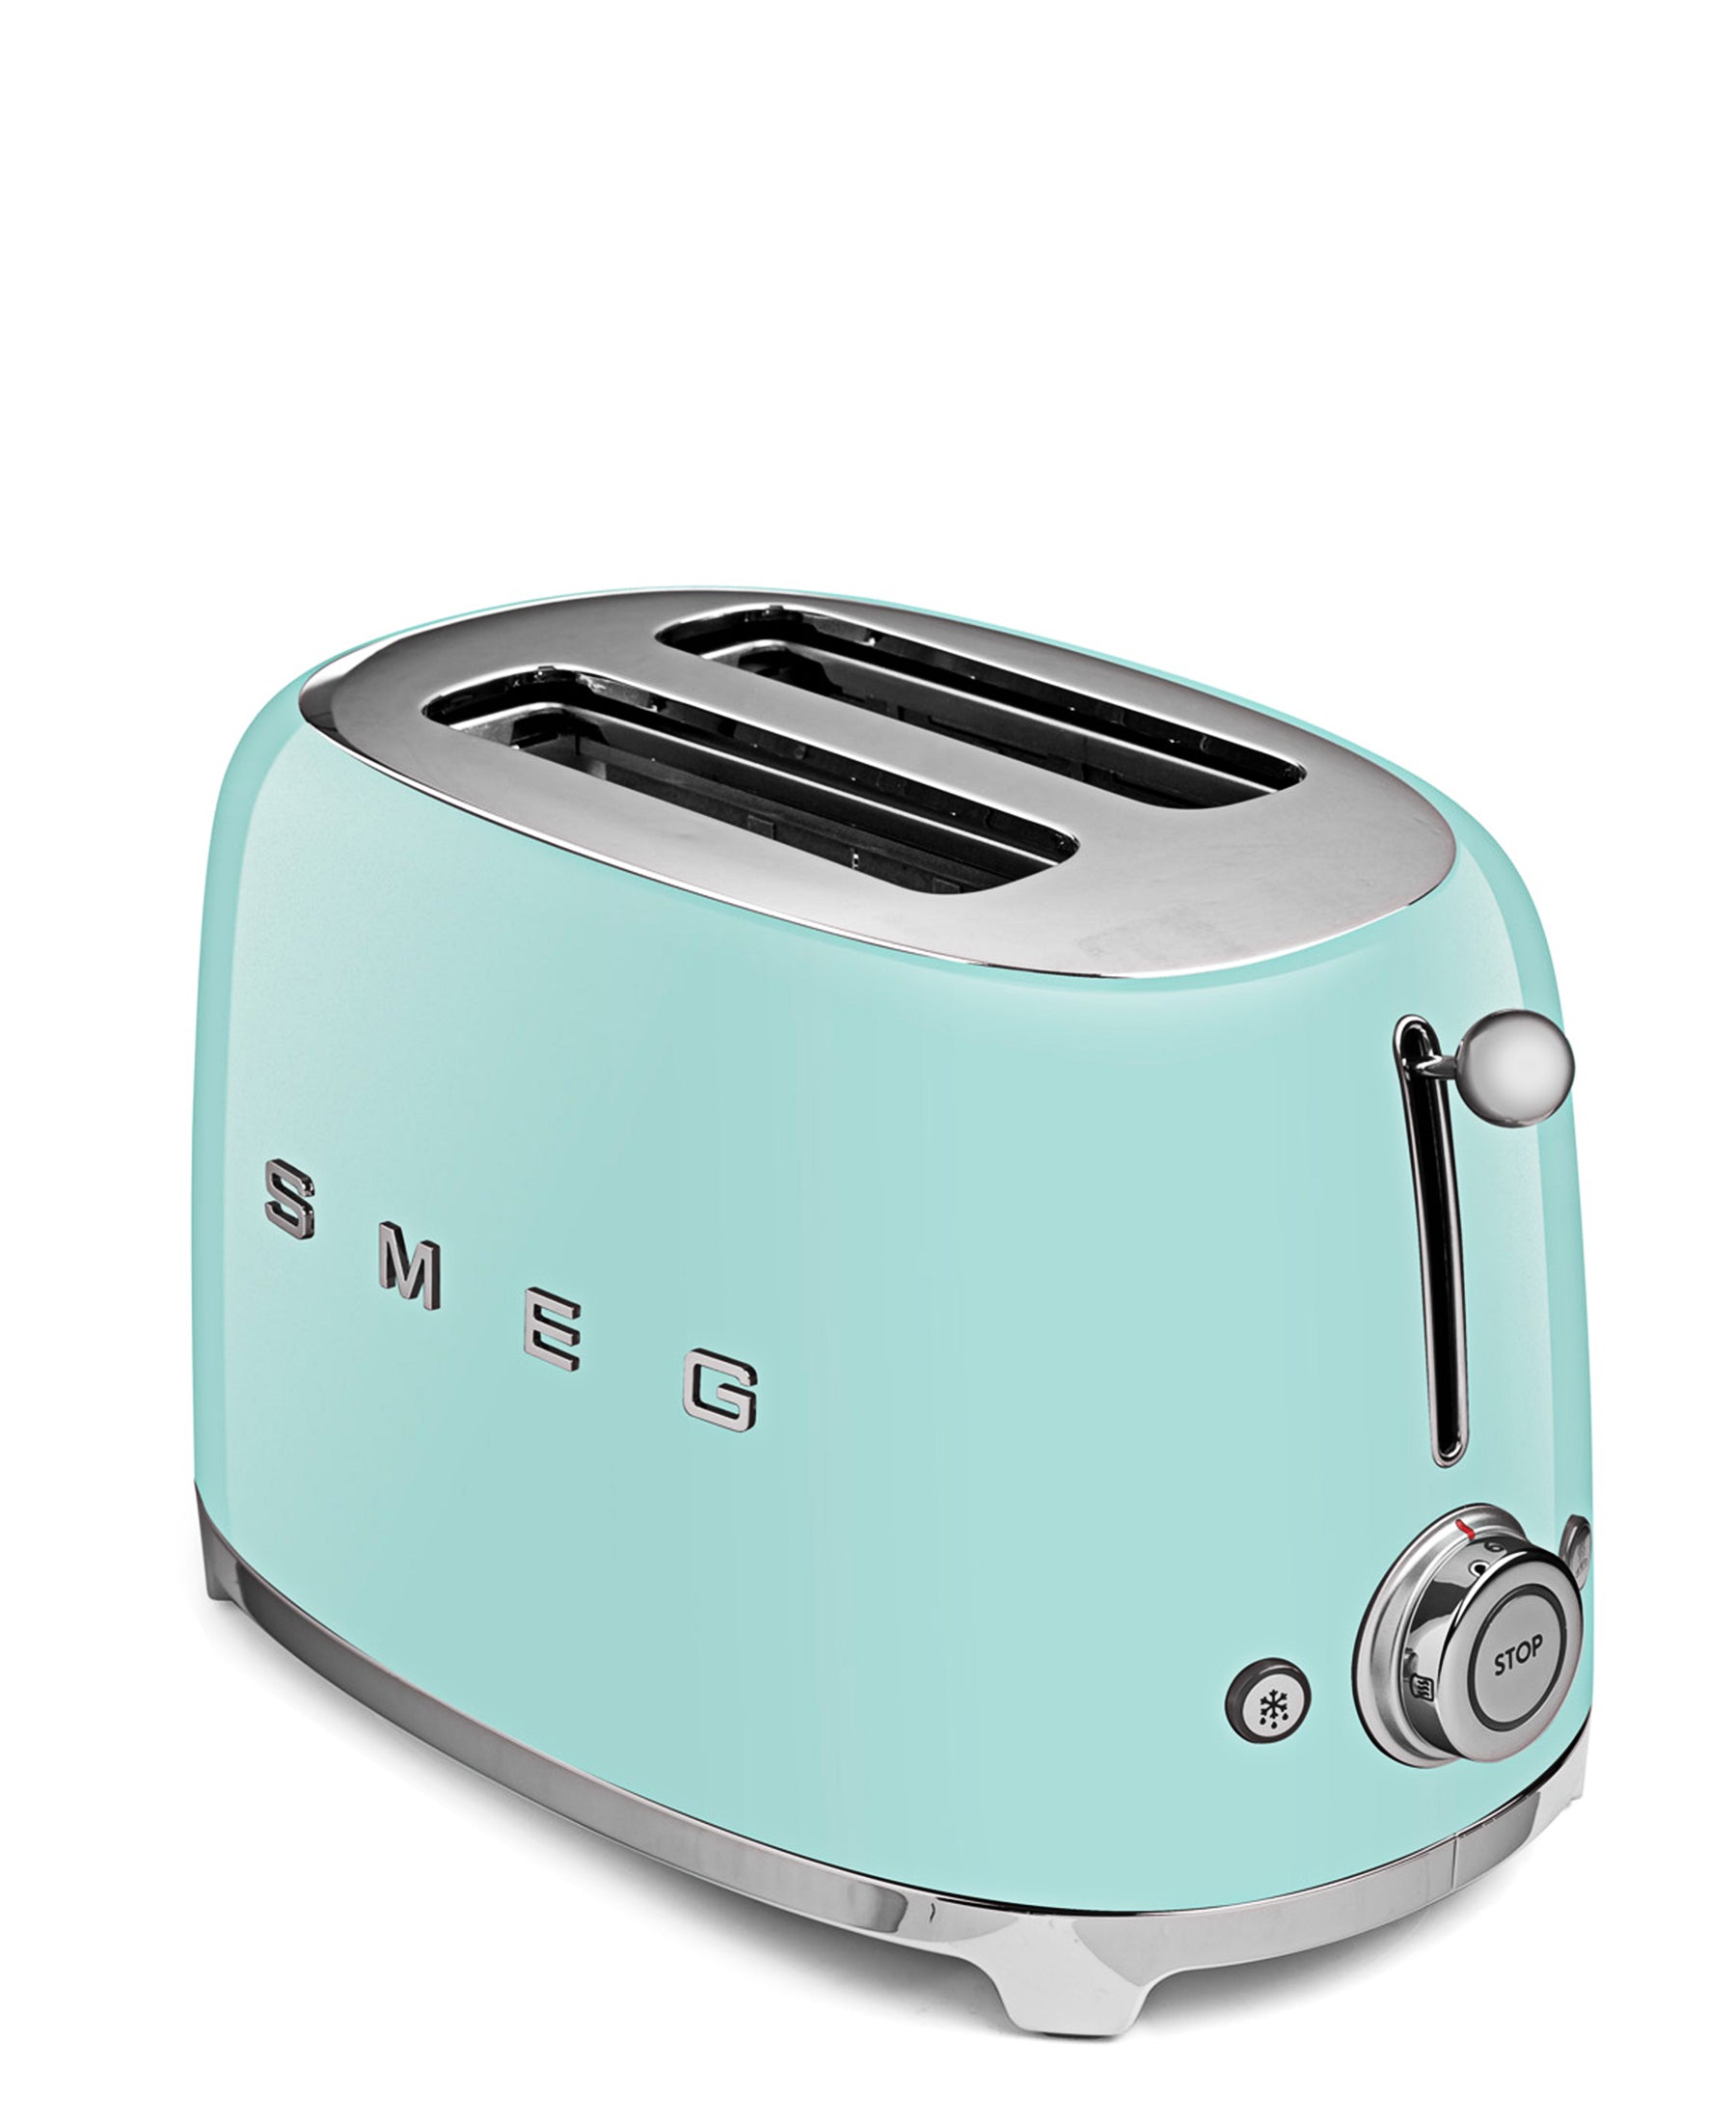 Smeg Retro 4 Slice Toaster - Pastel Green